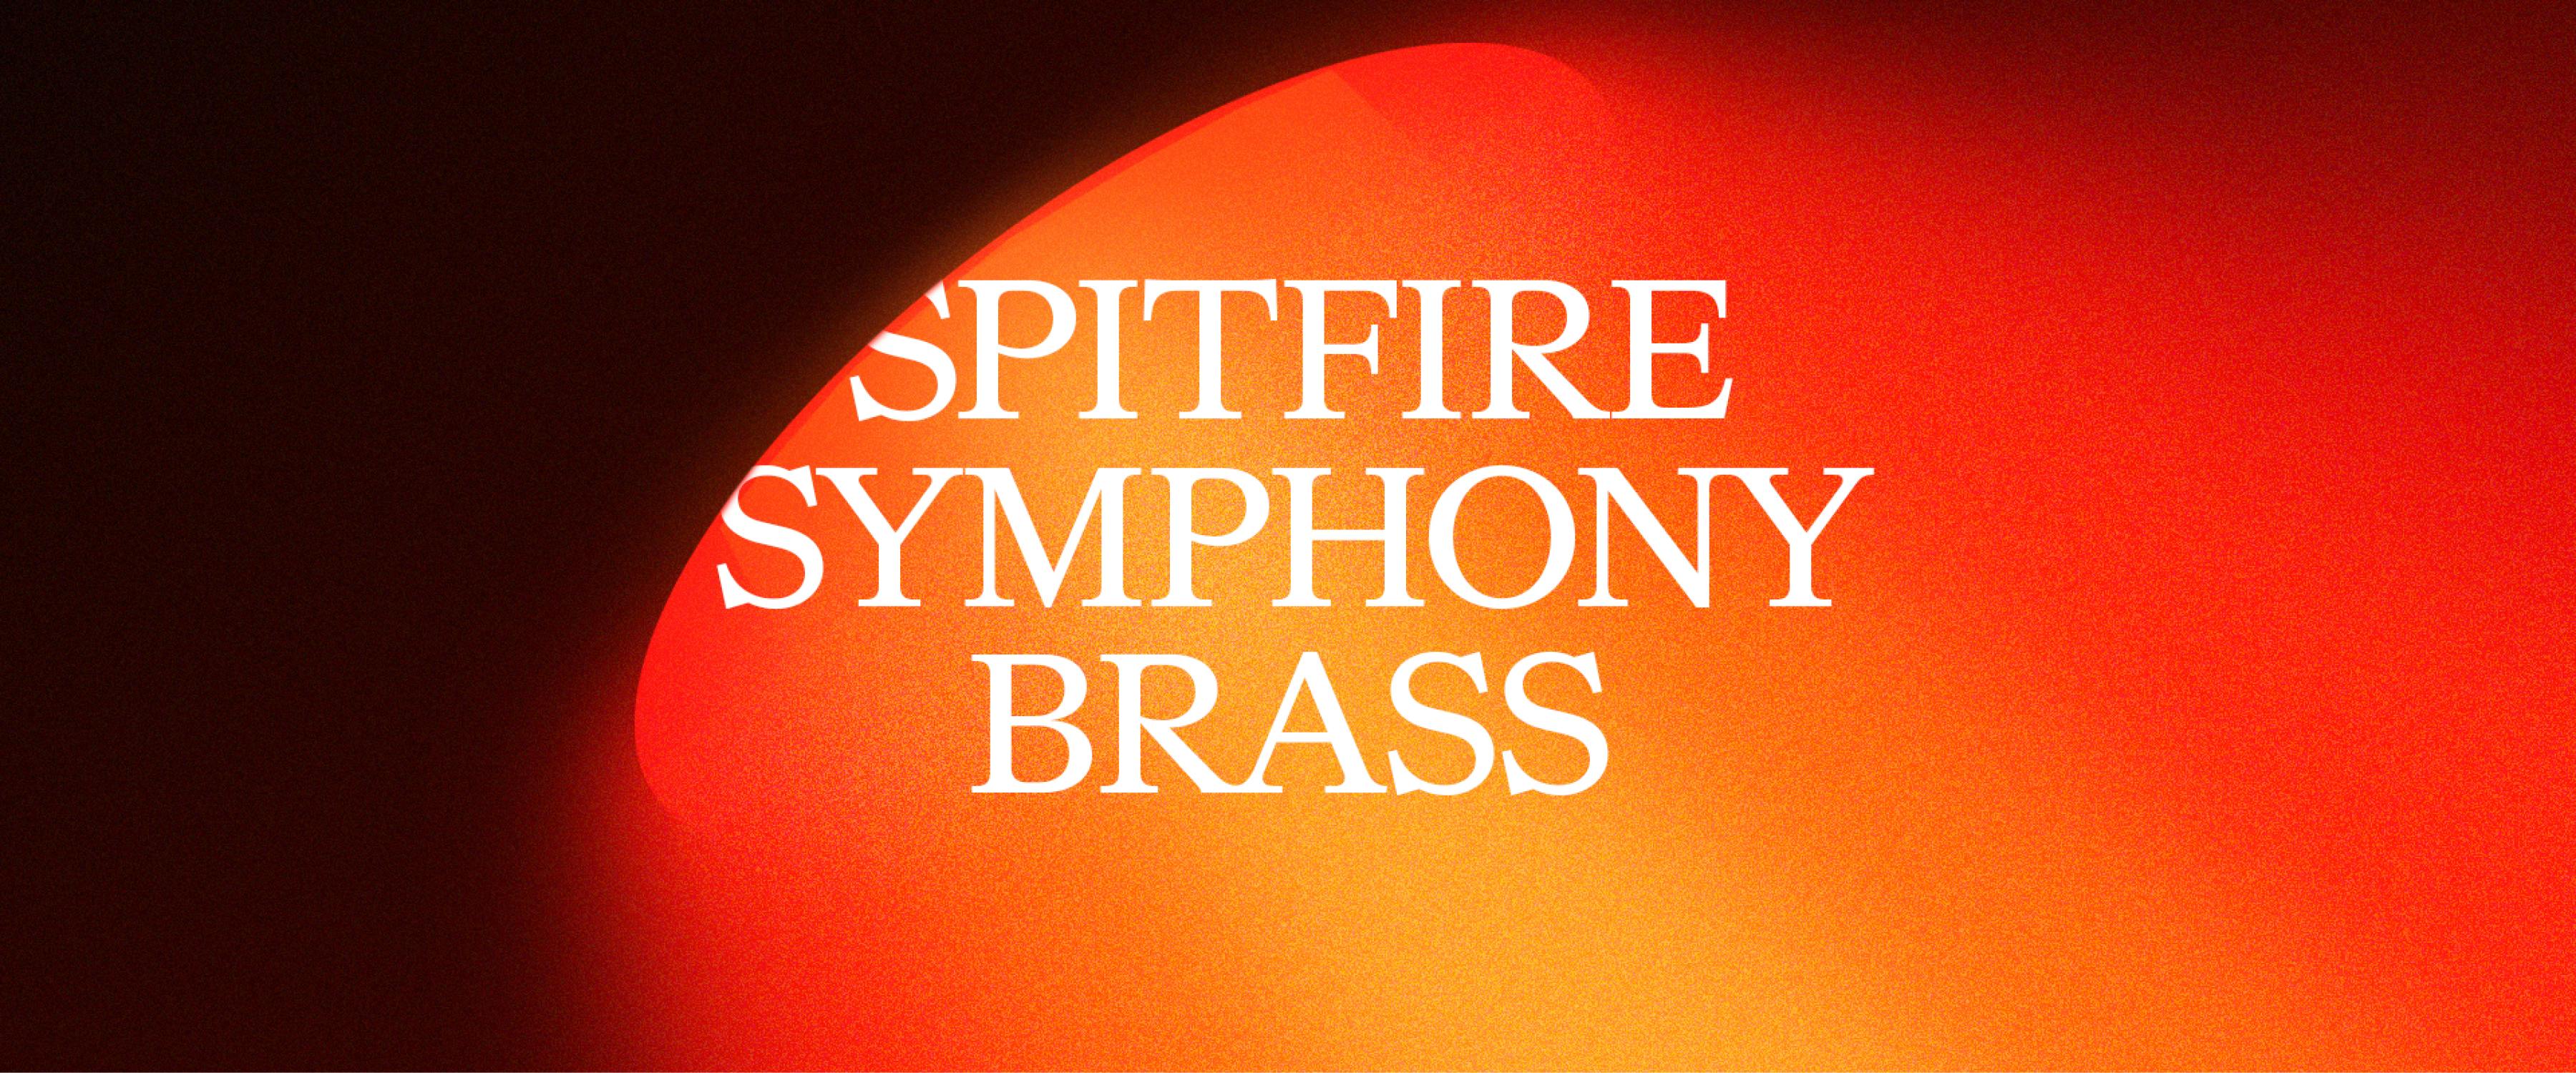 Spitfire Symphony Brass